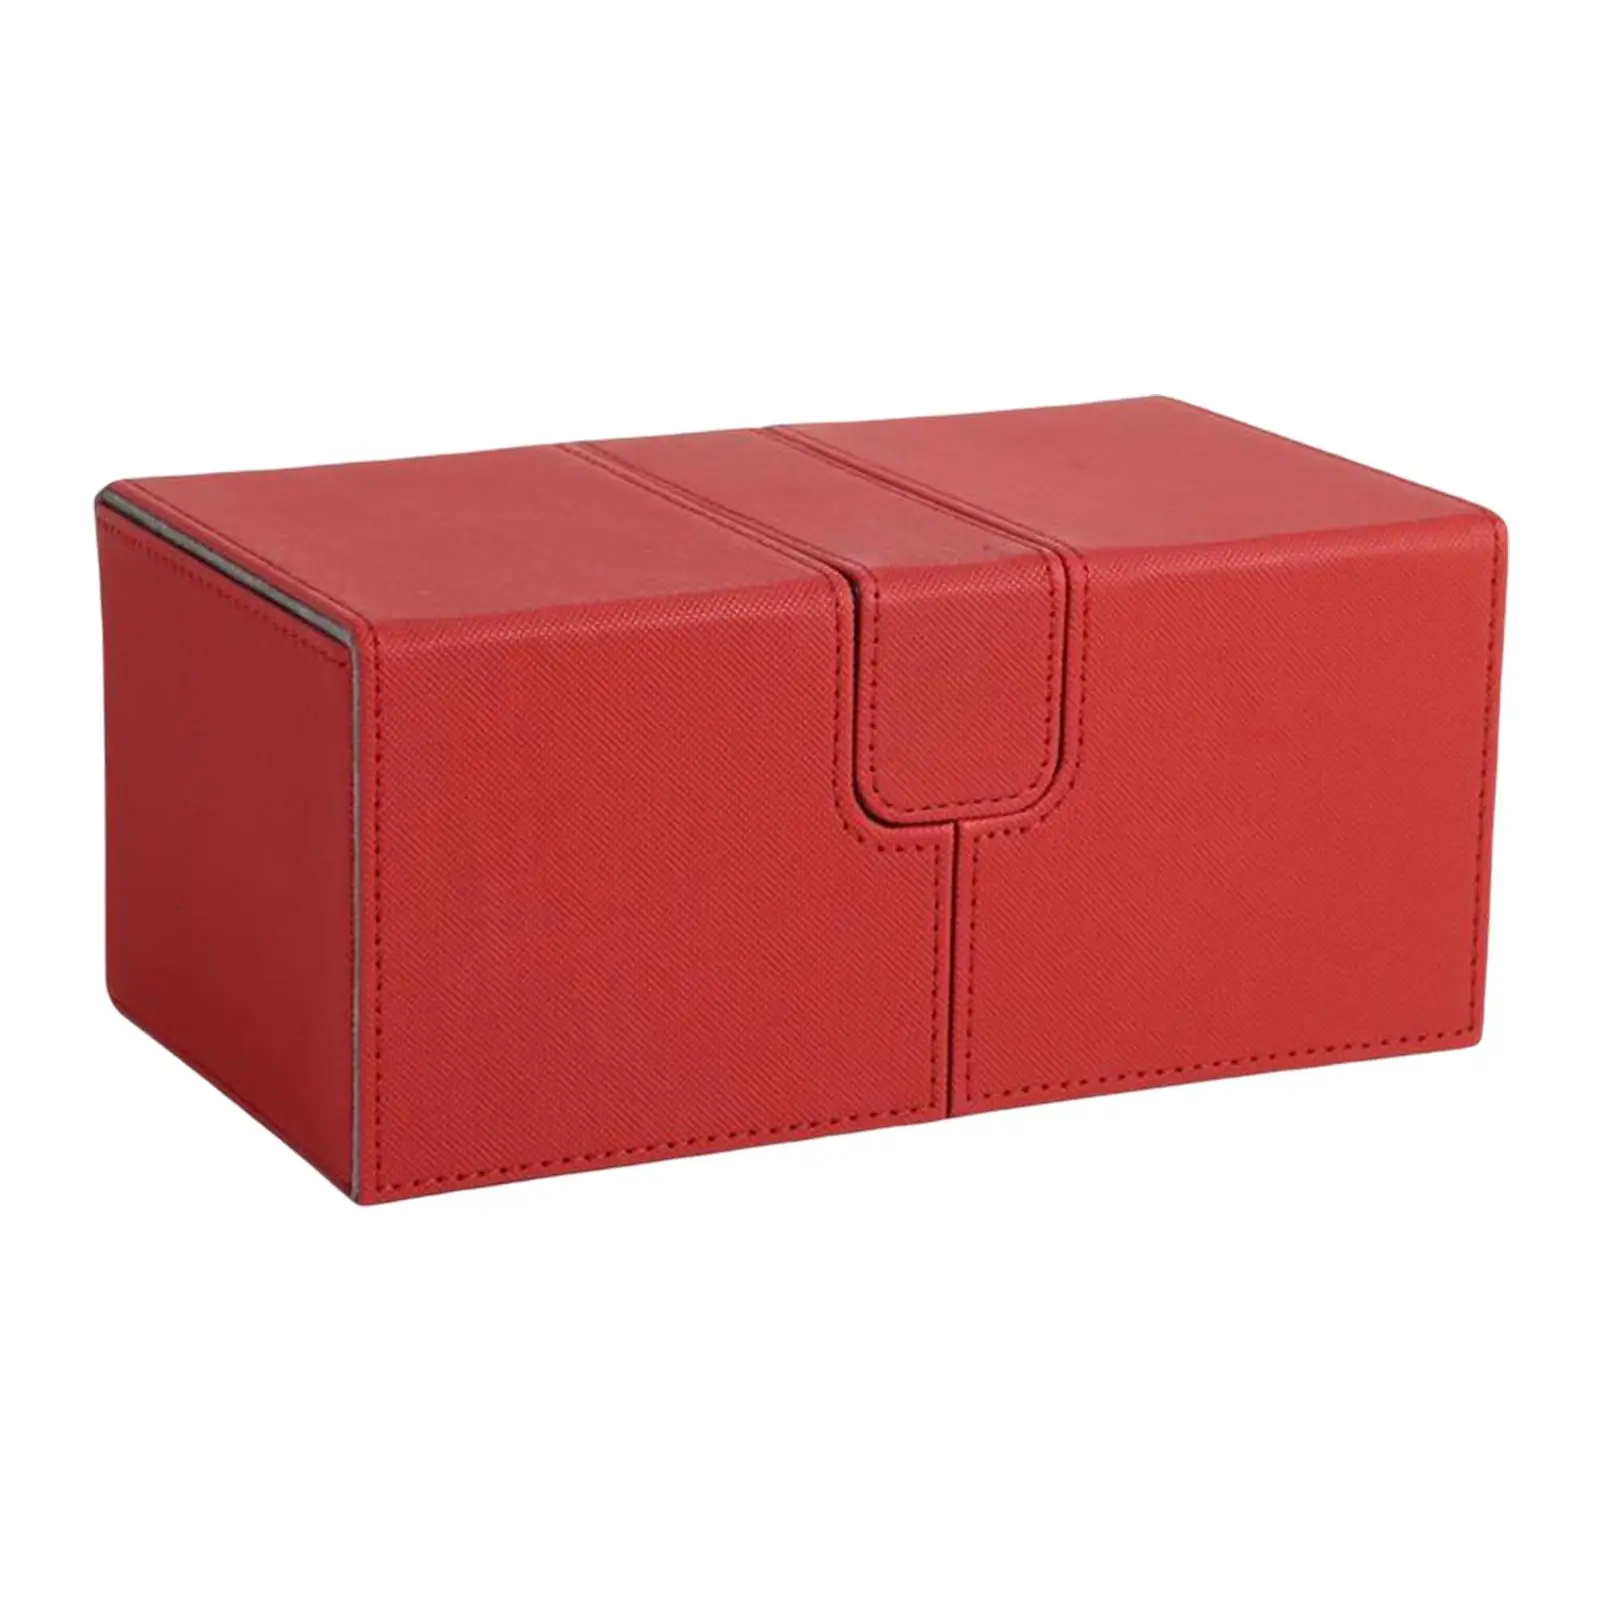 toysmalle Durable Card Deck Box Holder Organizer Storage Closure